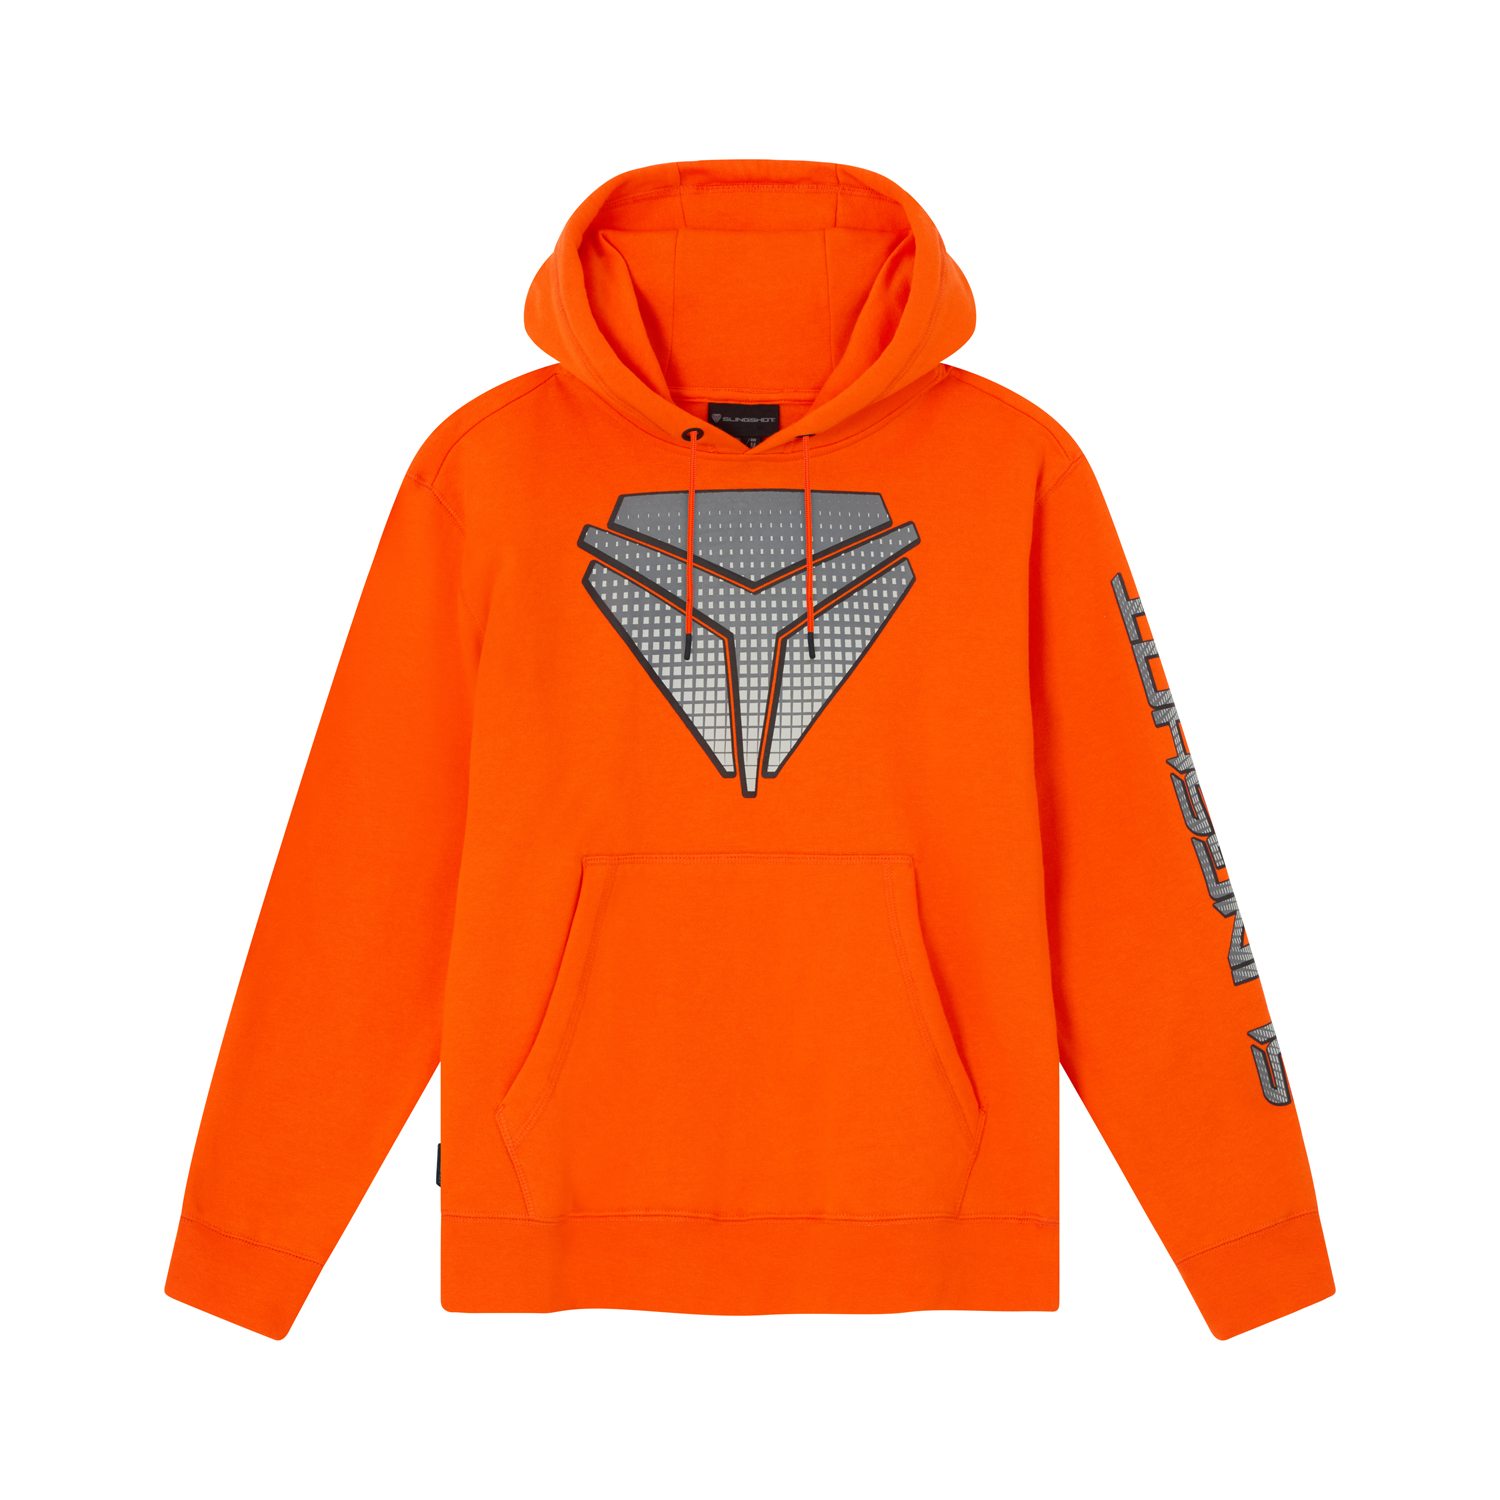 Unisex Hoodie Sweatshirt, Orange